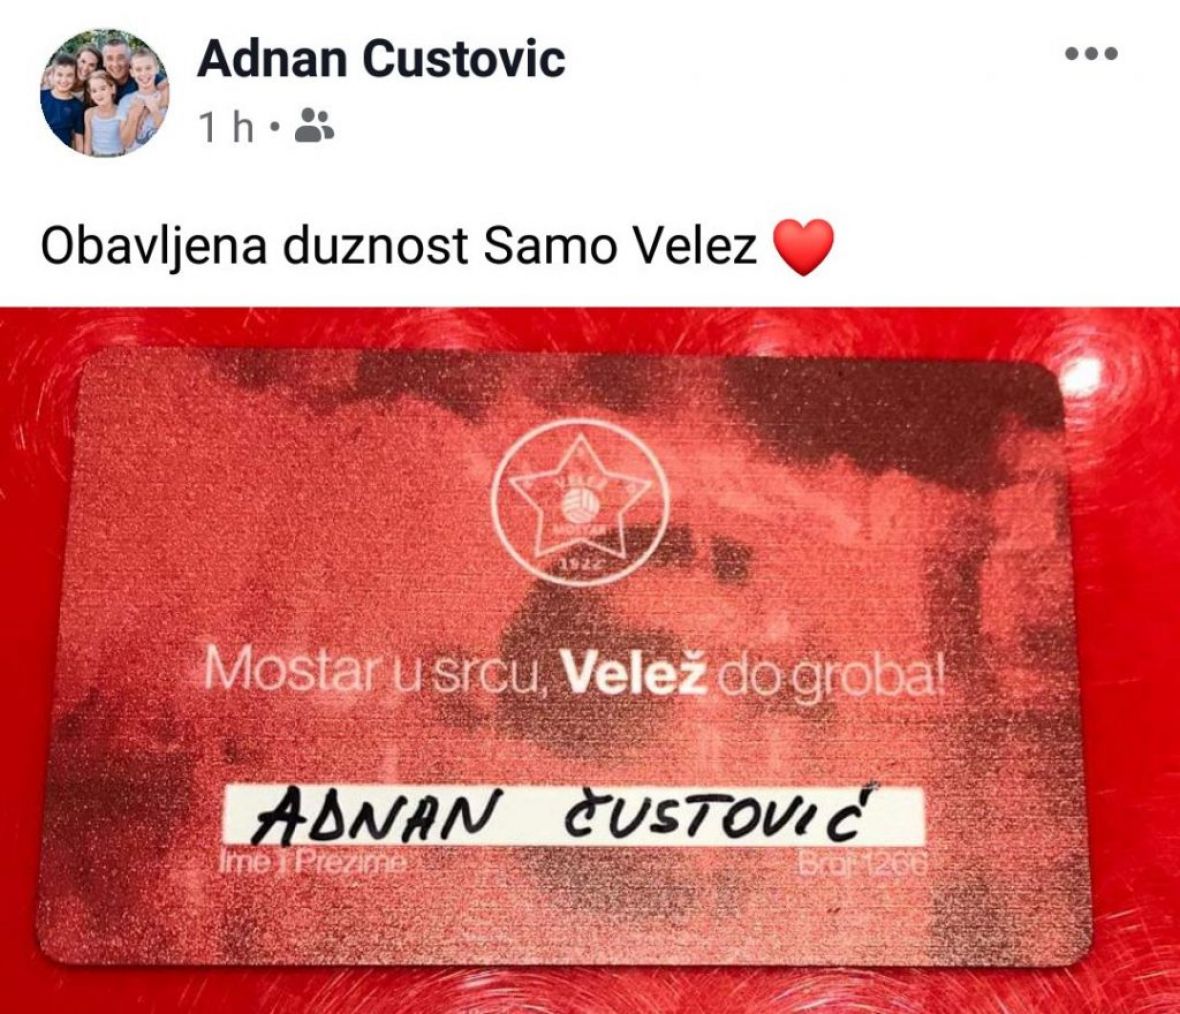 Objava Čustovića na društvenoj mreži Facebook - undefined